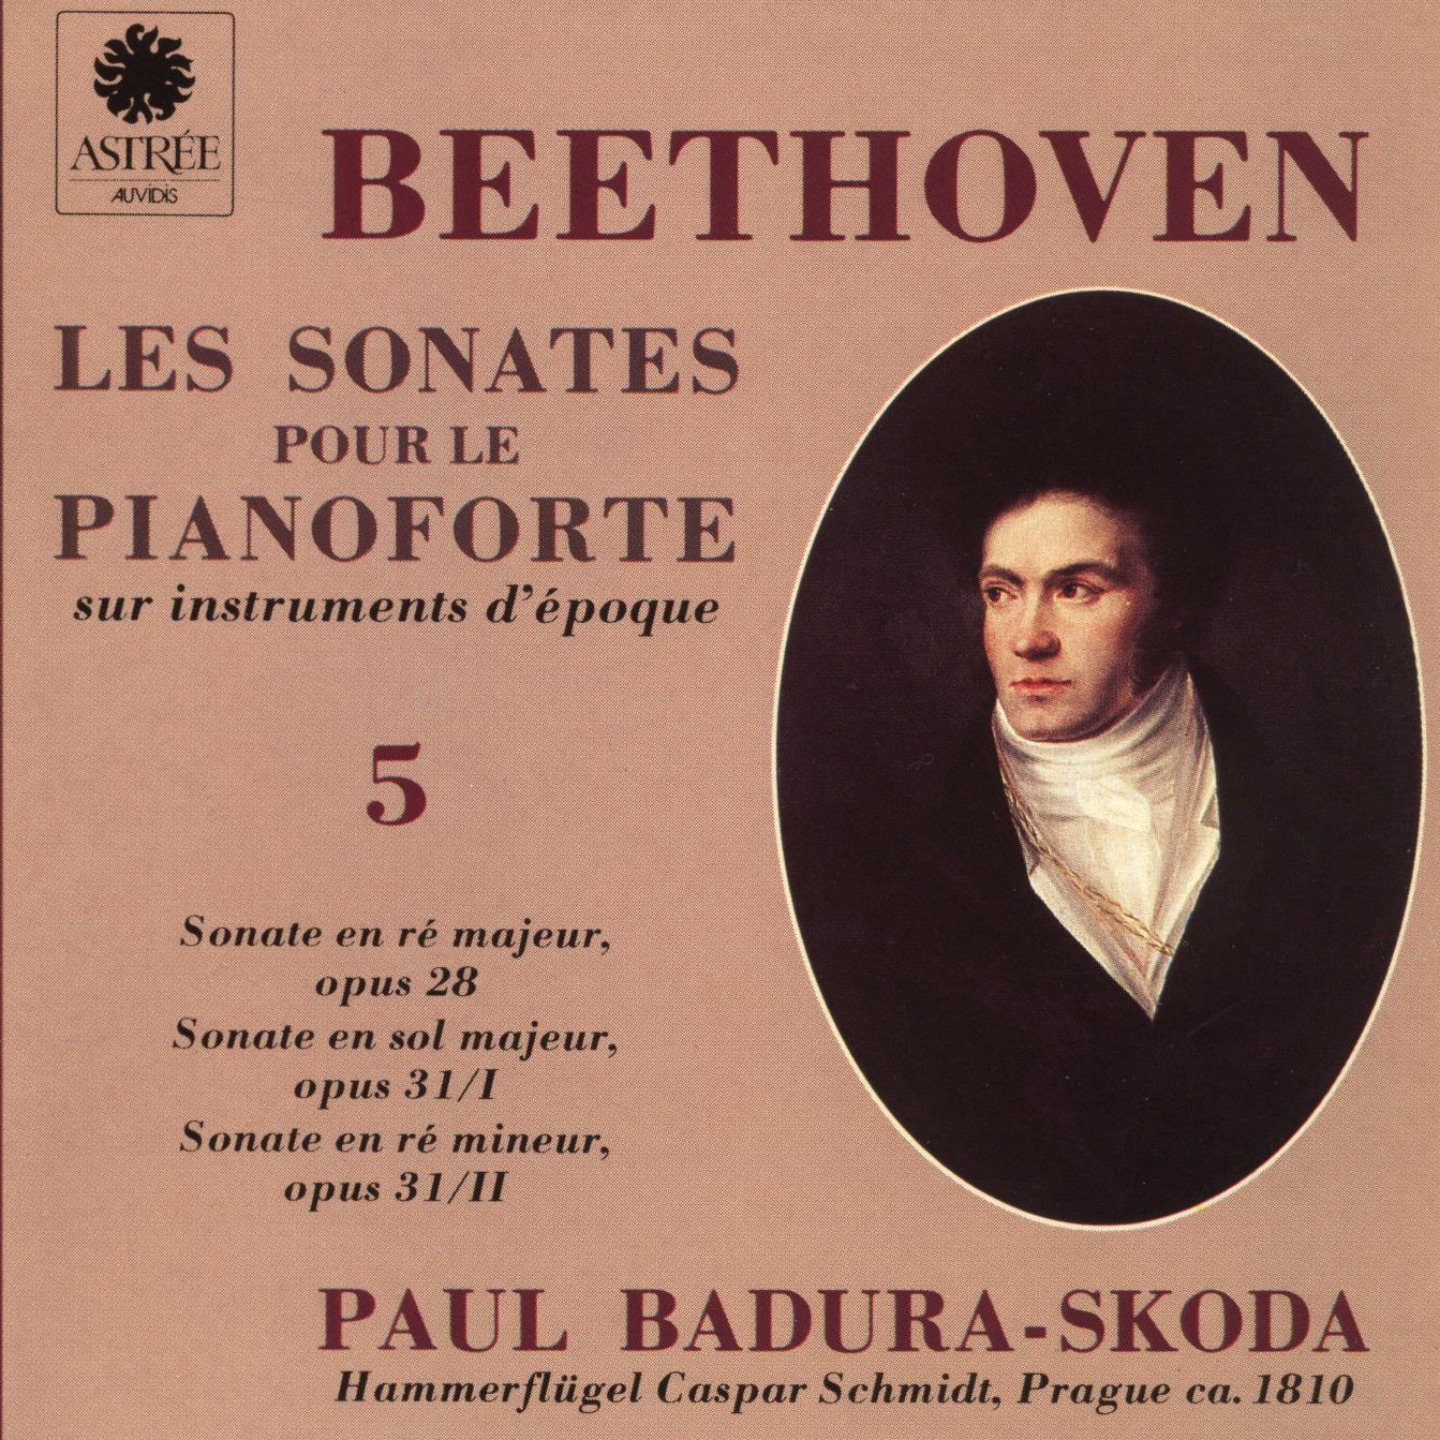 Beethoven: Les sonates pour le pianoforte sur instruments d'e poque, Vol. 5